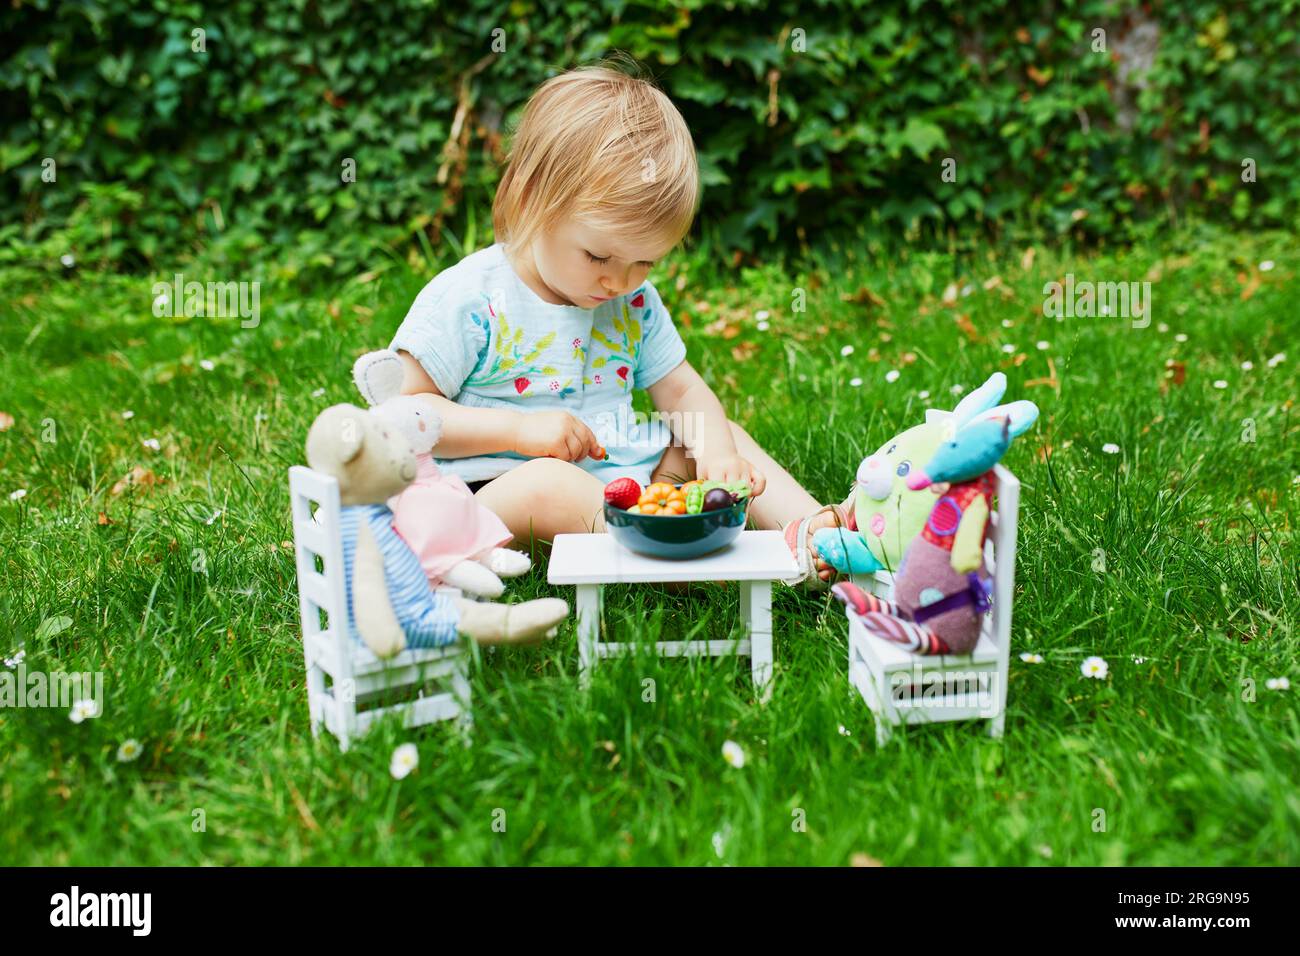 Adorable niña jugando con juguetes blandos en el parque o jardín y haciéndolos cenar con frutas y verduras de juguete. Juegos de rol para niños pequeños Foto de stock